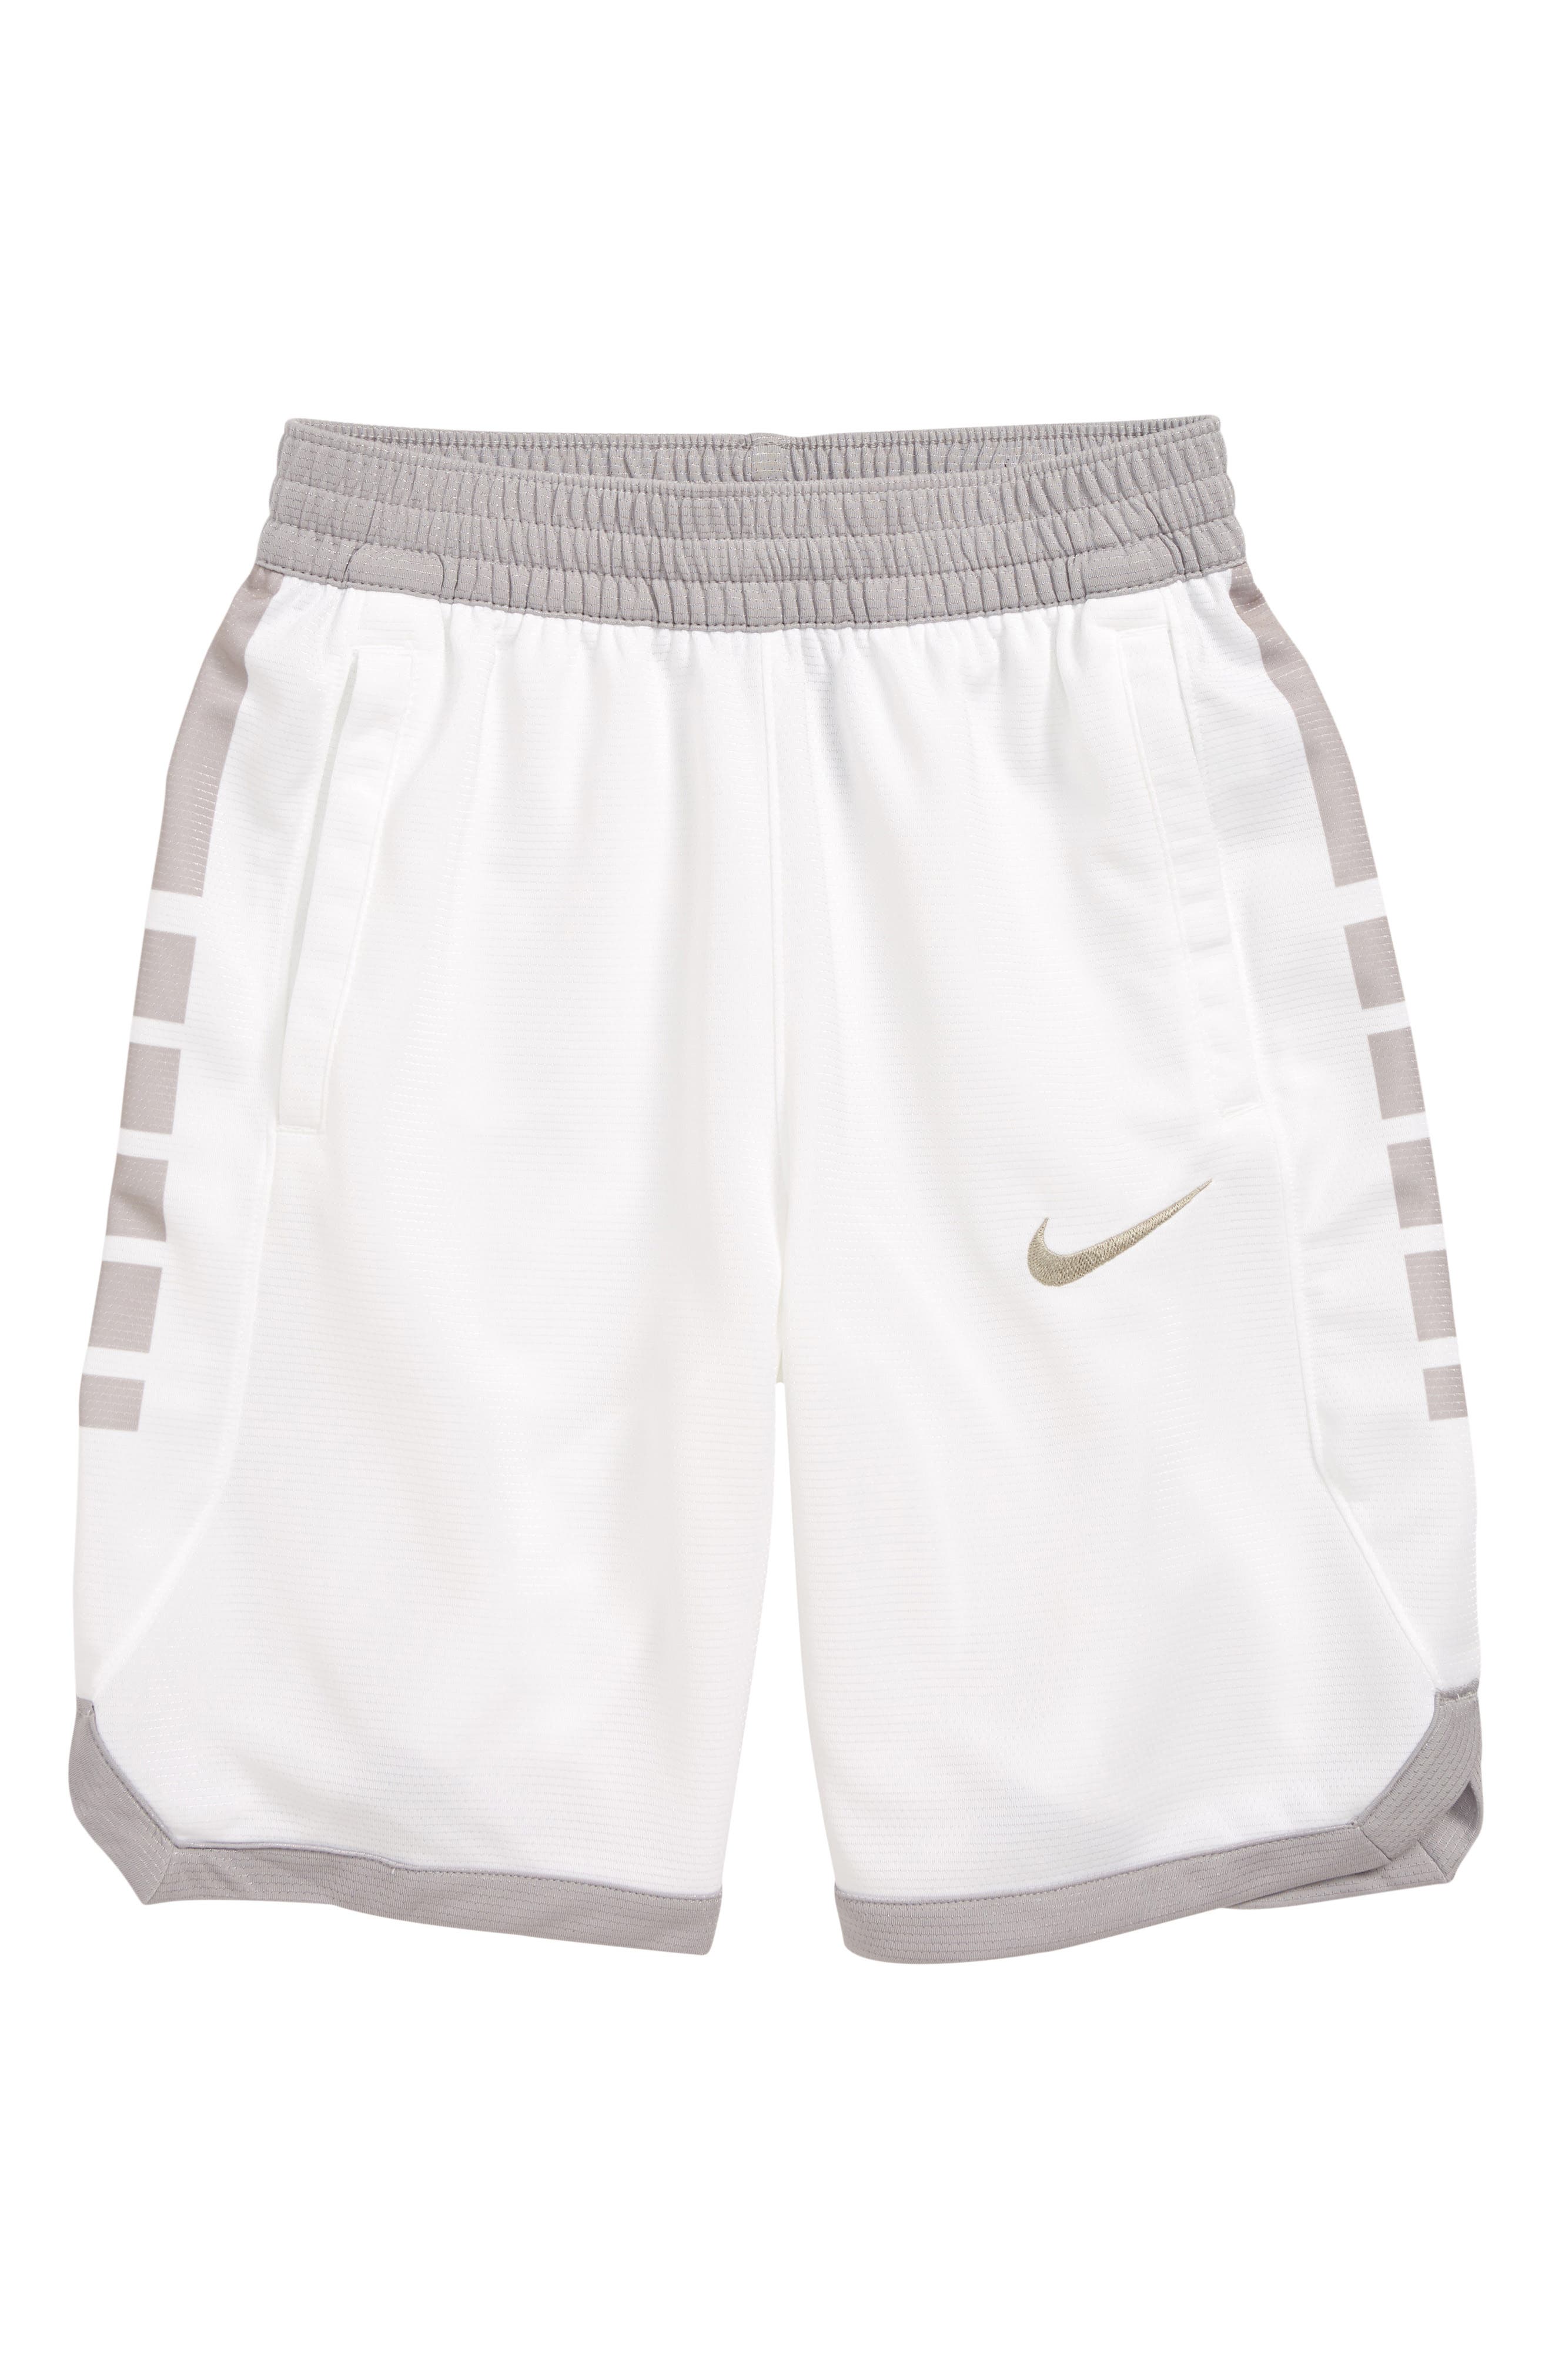 white nike basketball shorts